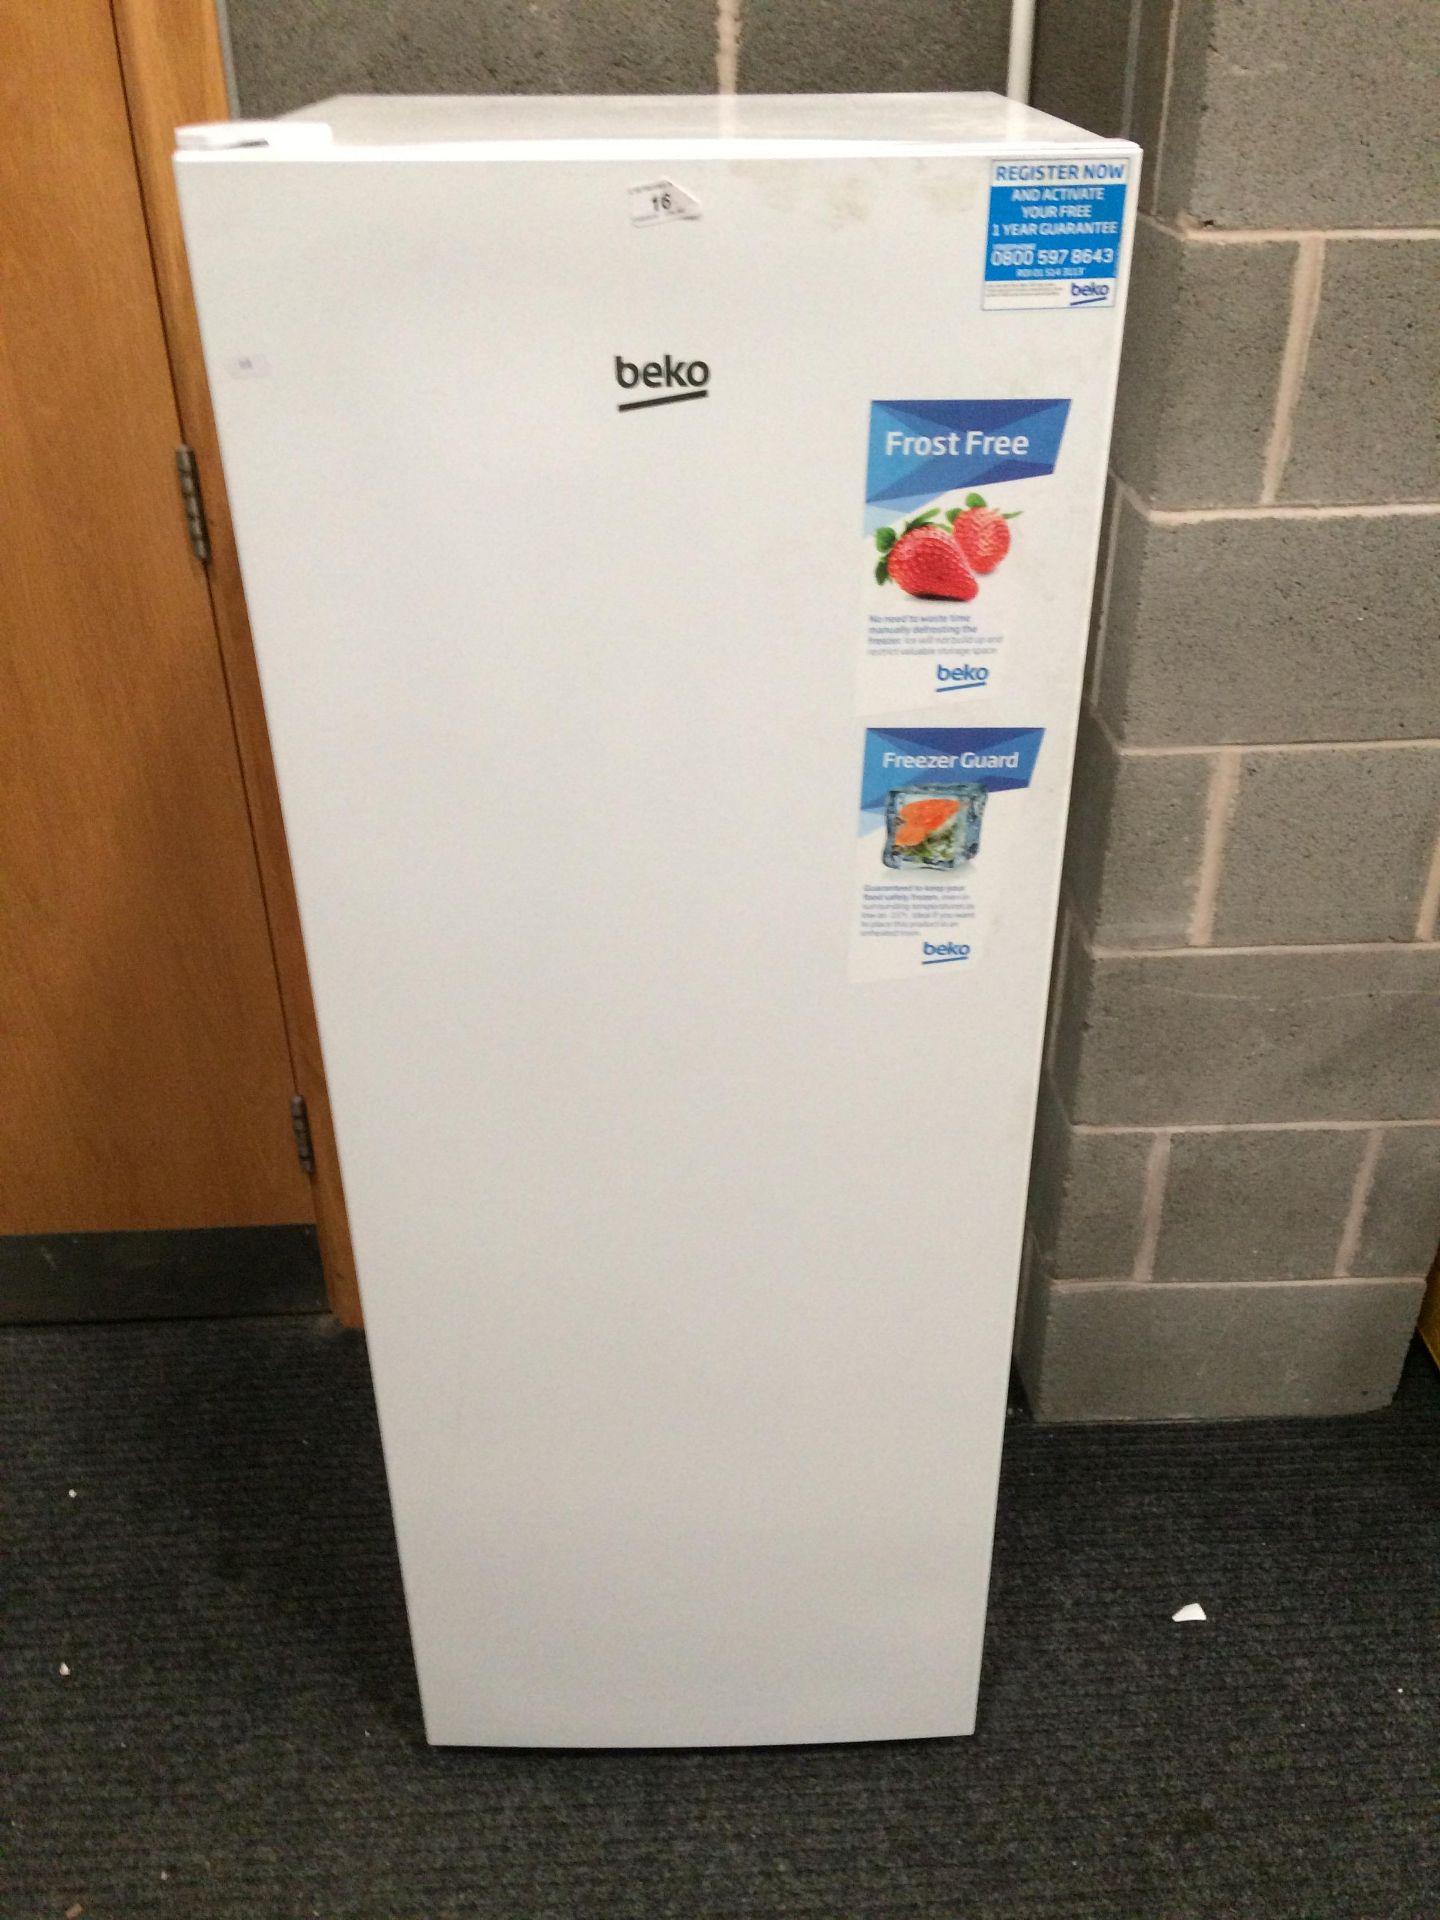 A Beko FFG1545W upright freezer